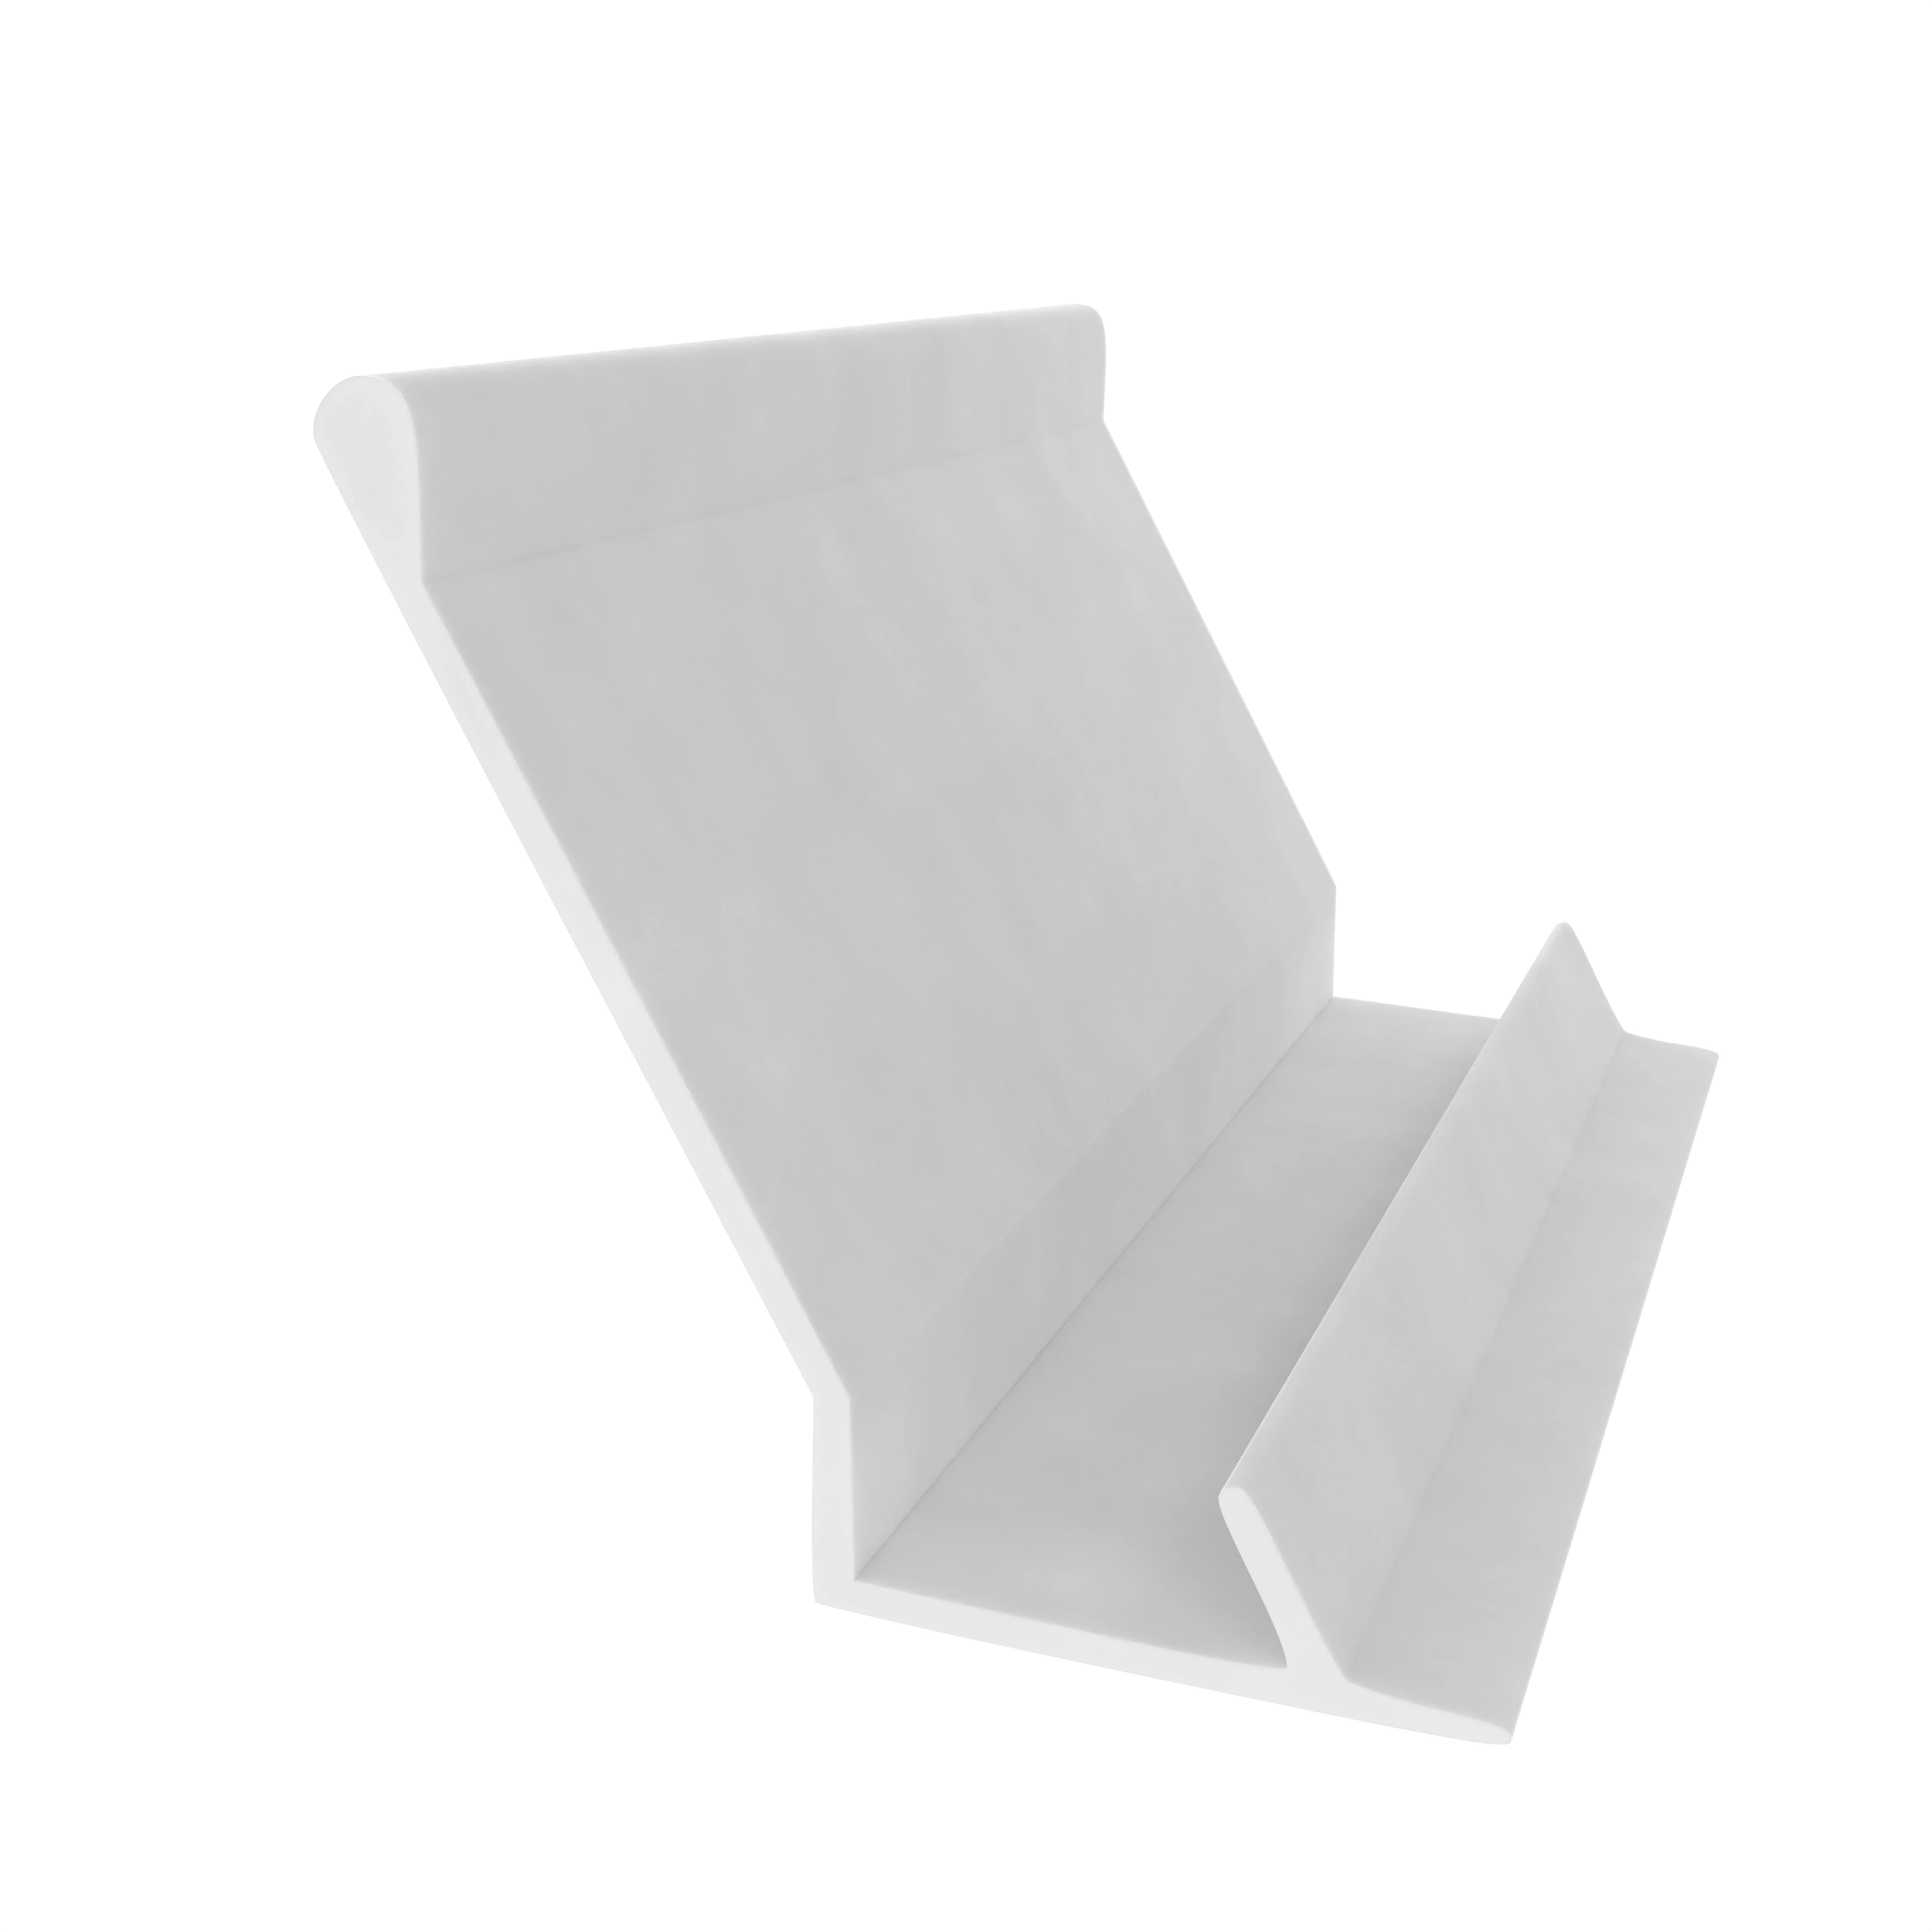 Anschlagdichtung für Kaupp Fenster | 11,6 mm Höhe | Farbe: weiß 